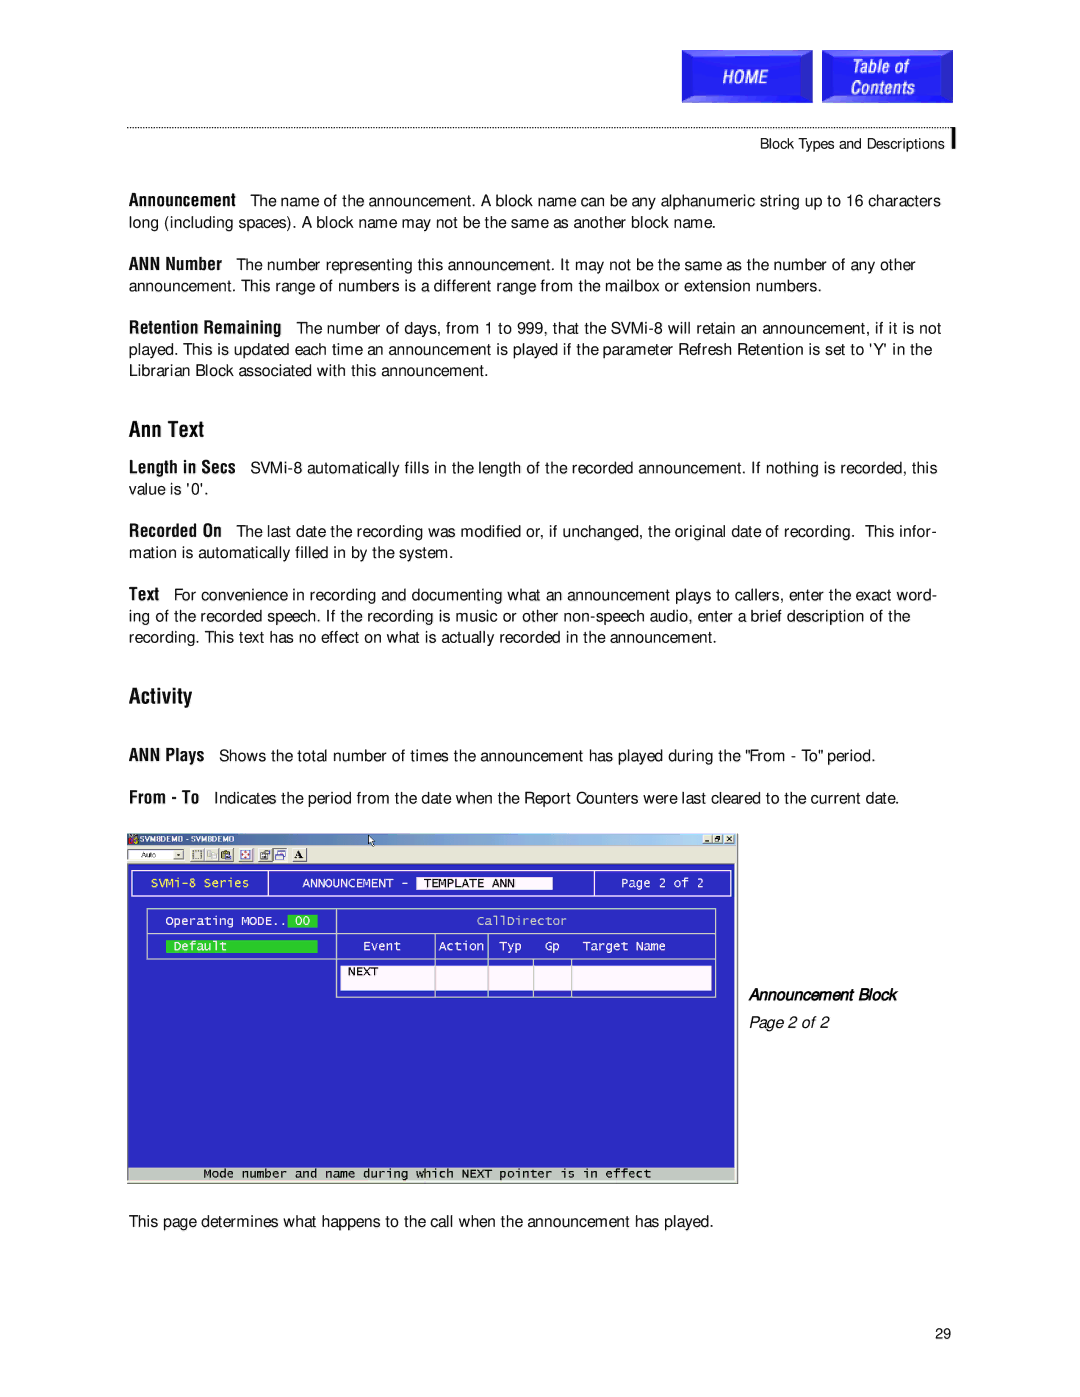 Samsung SVMi-8 technical manual Ann Text, Activity 